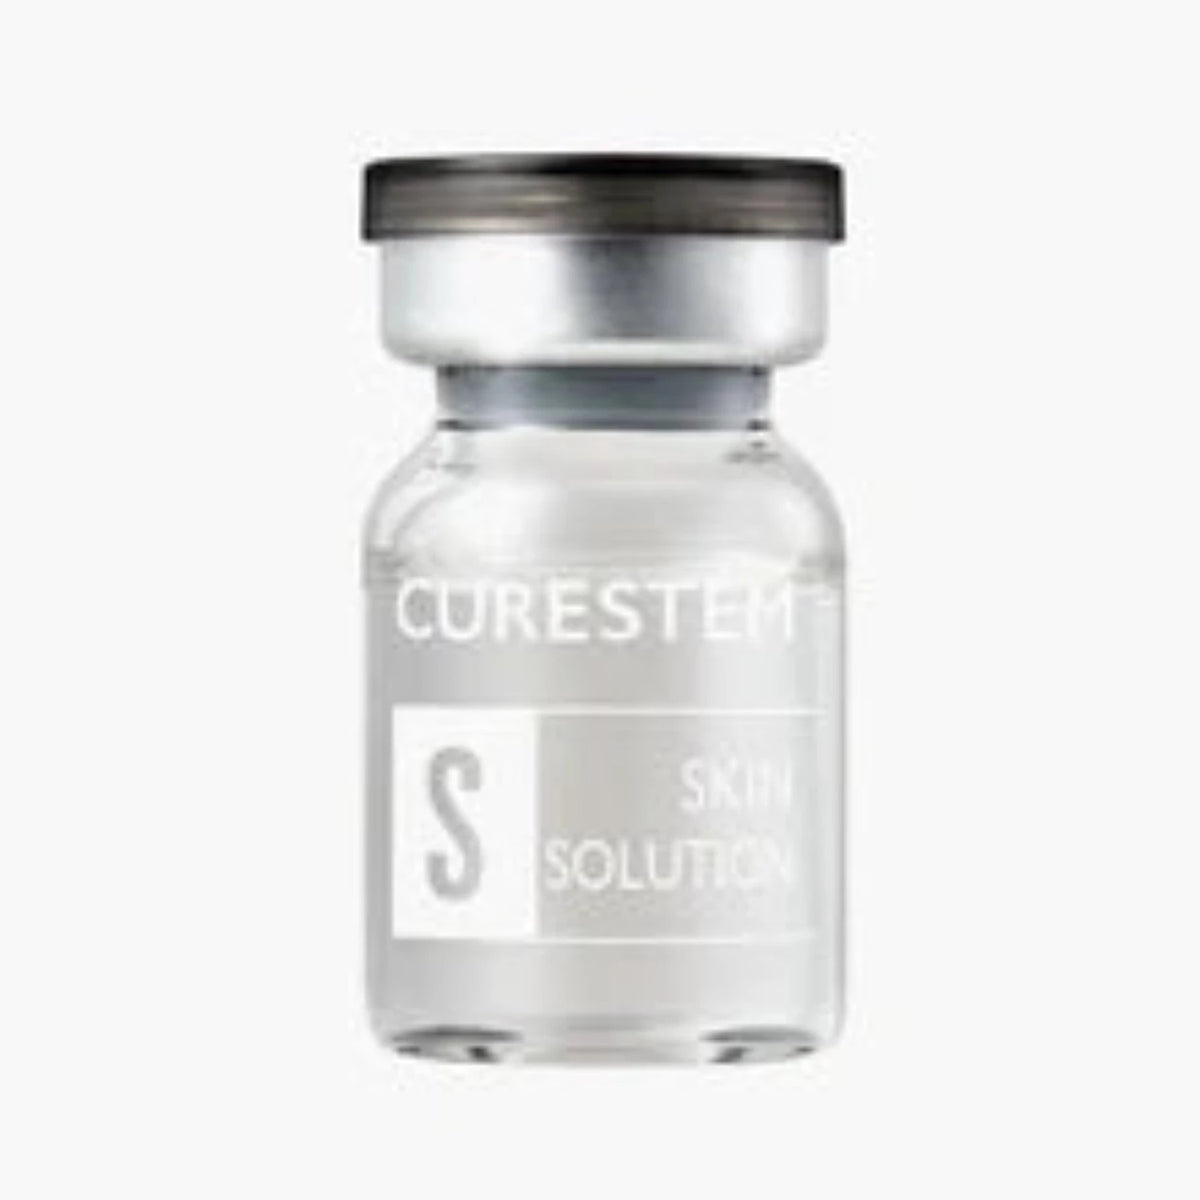 CureStem Skin Solution - The CureStem 20 Exosome Activator